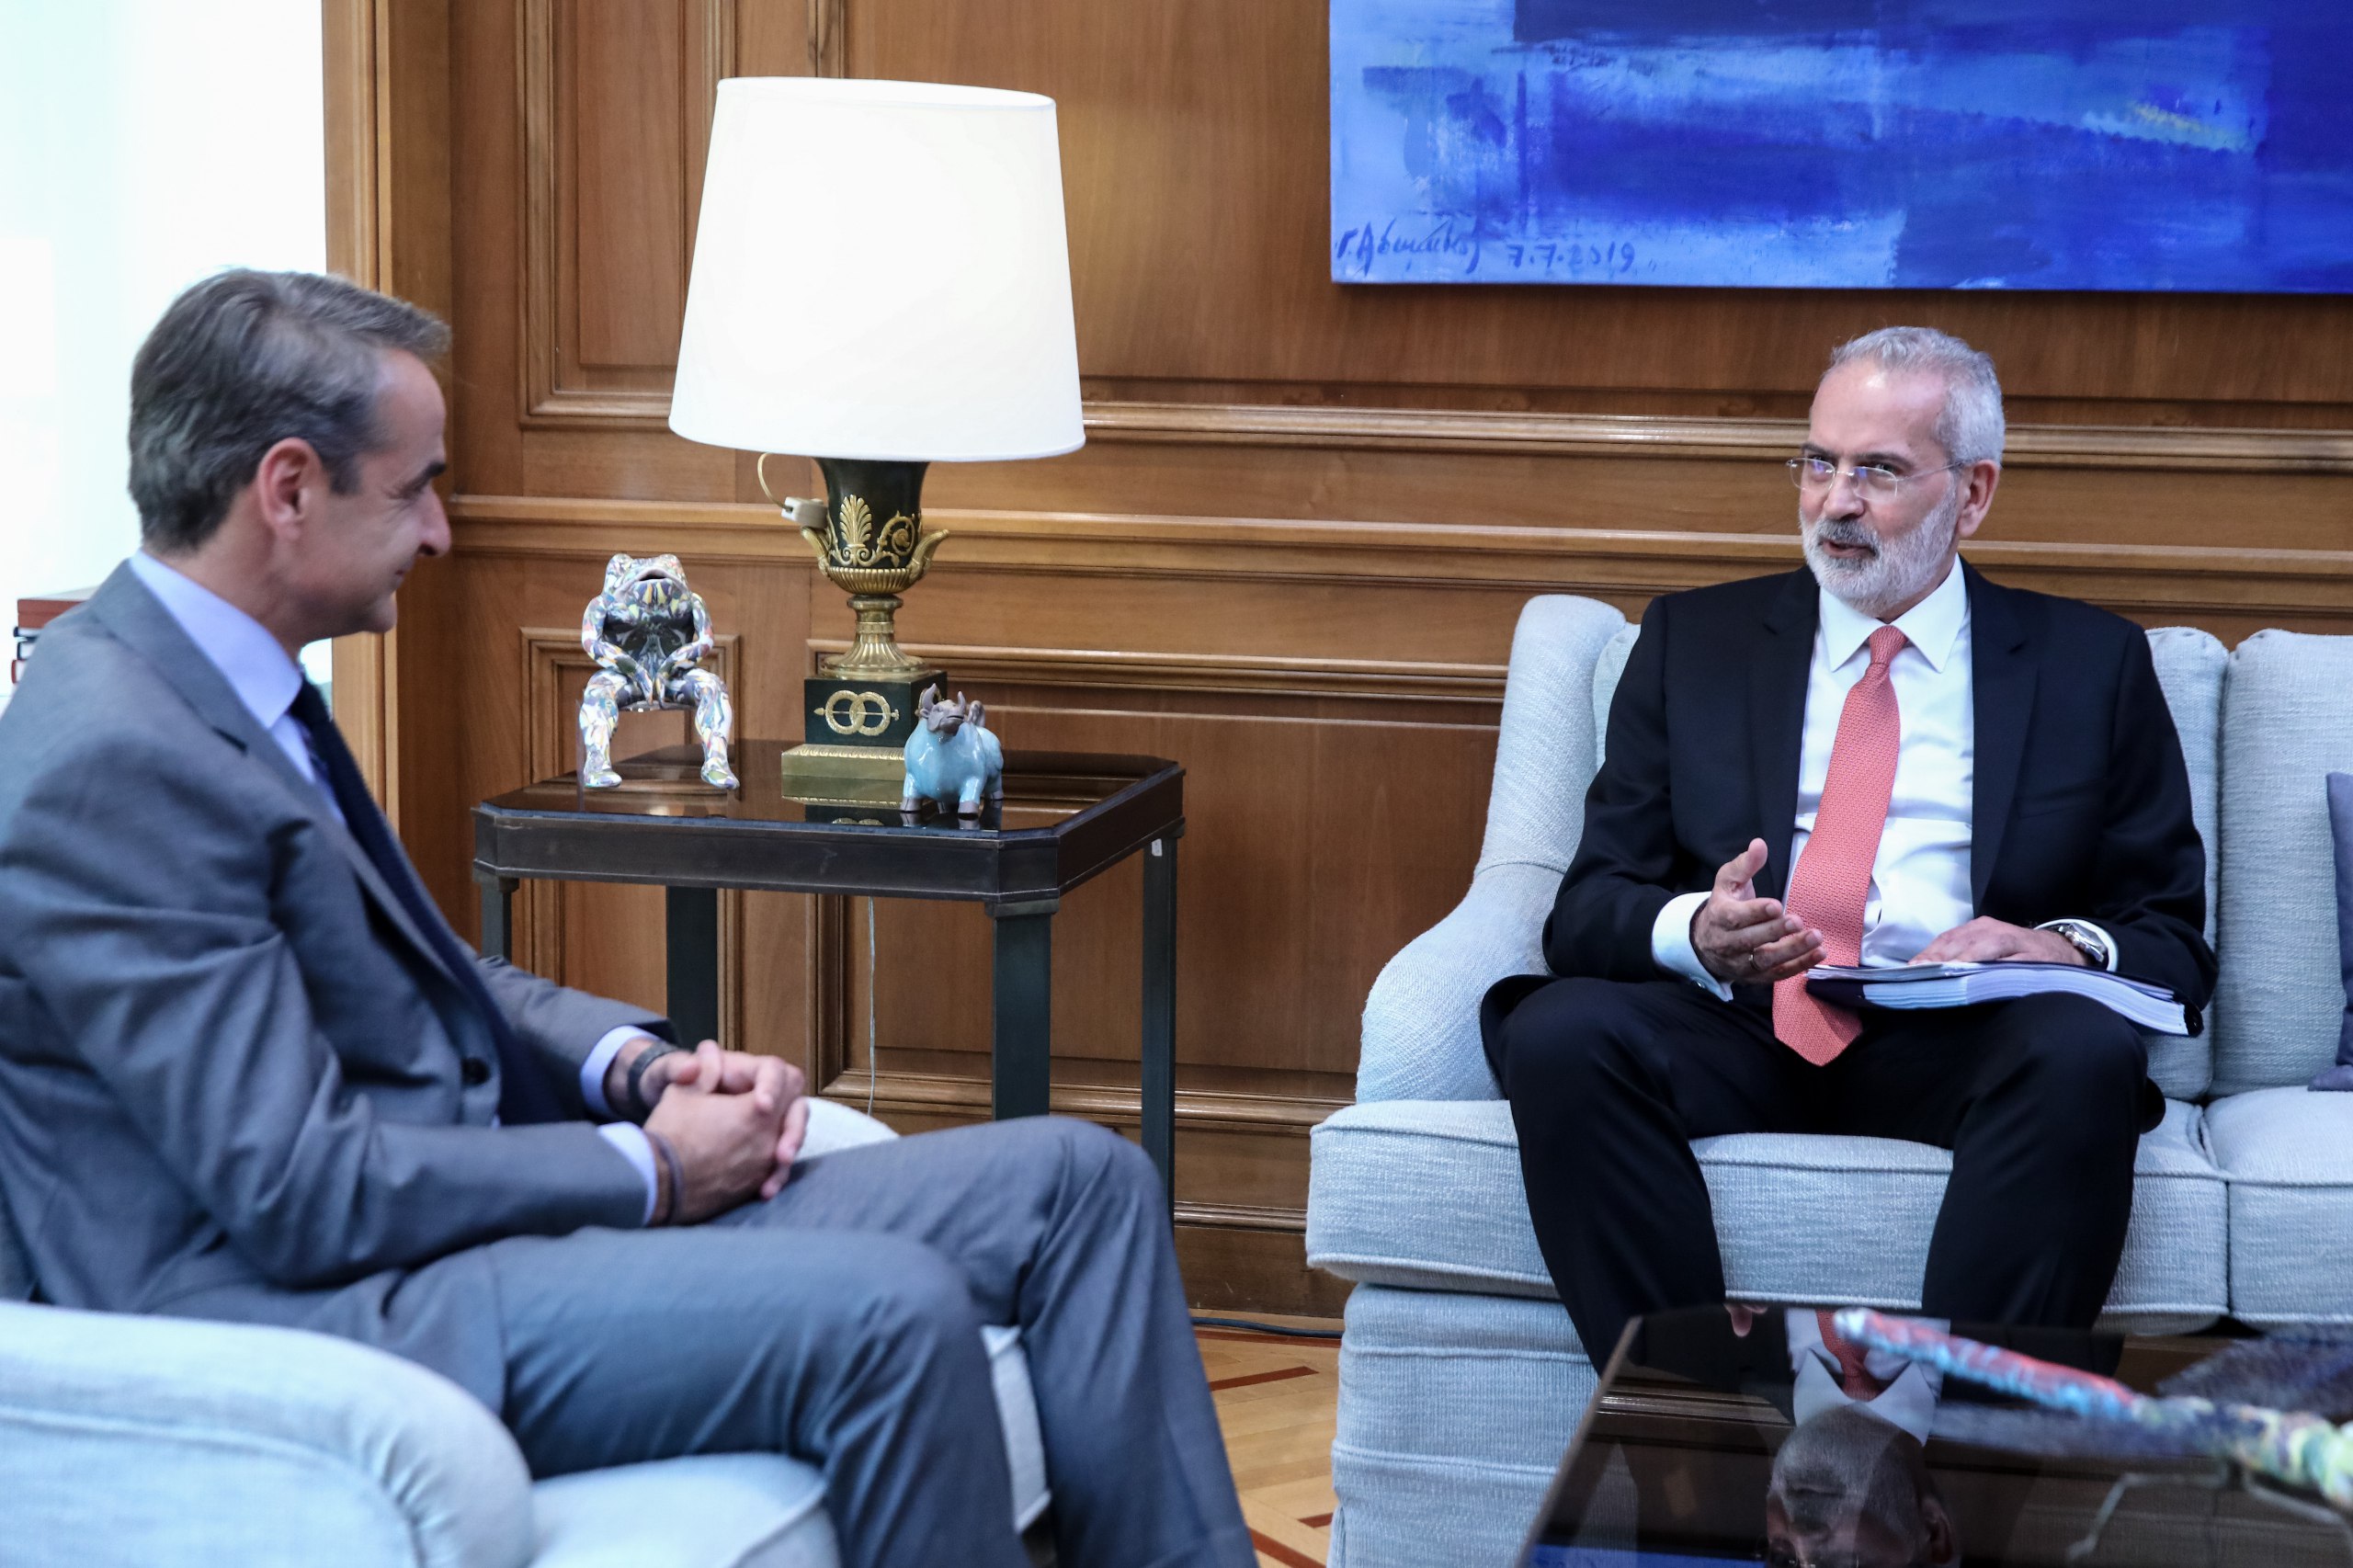 Υπηρεσιακός πρωθυπουργός ο Ιωάννης Σαρμάς - Τι περιέχει ο μπλε φάκελος που παρέλαβε από τον Μητσοτάκη